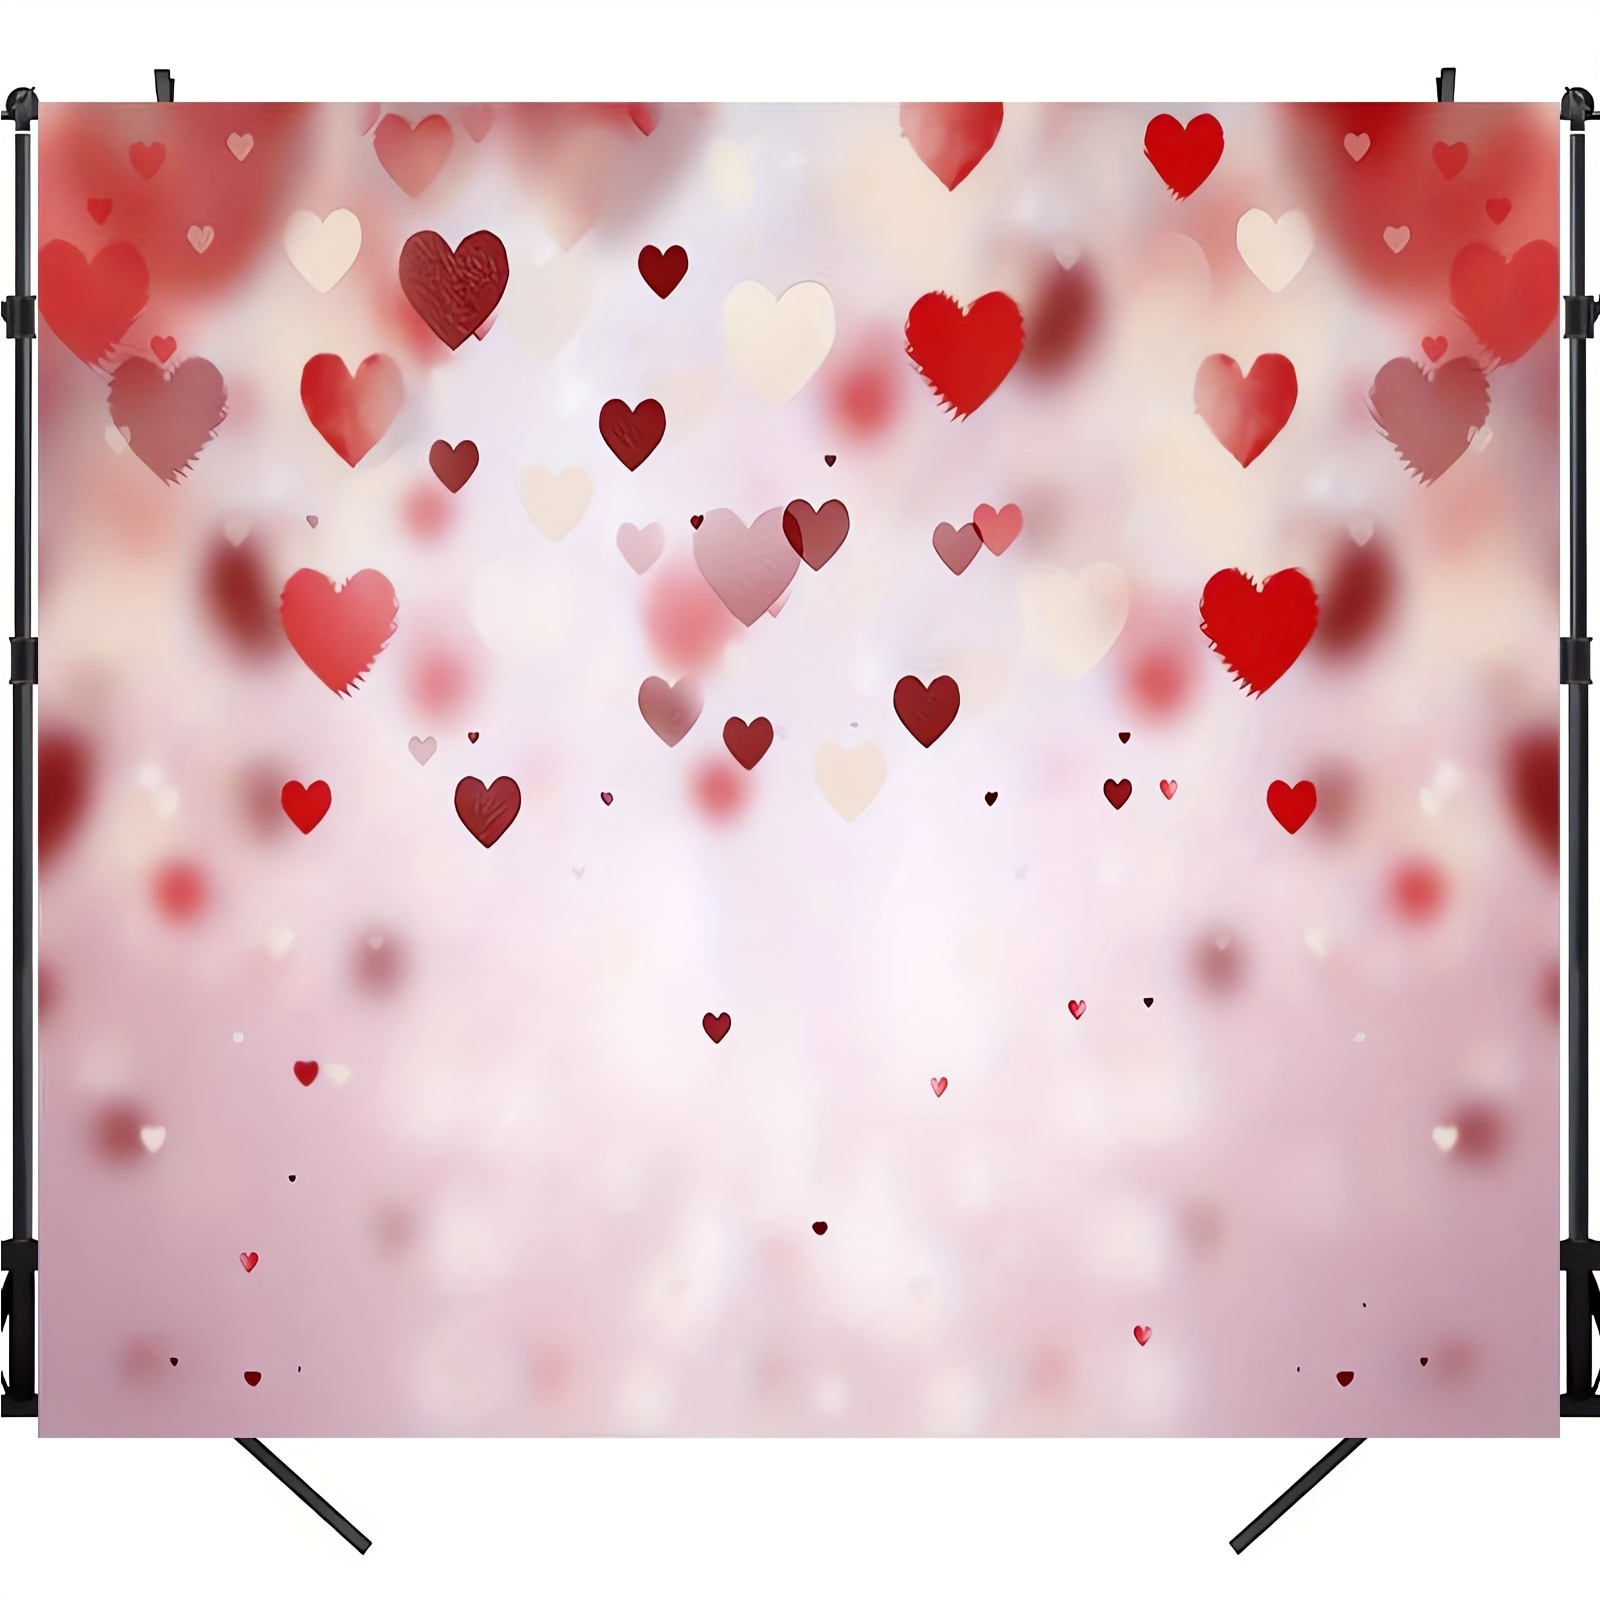 バレンタインデーにぴったりの赤いハートの装飾が施された写真用バックドロップ。写真撮影やビデオ撮影のための背景としておすすめです。サイズは51インチ×59インチ/70.8インチ×90.5インチです。